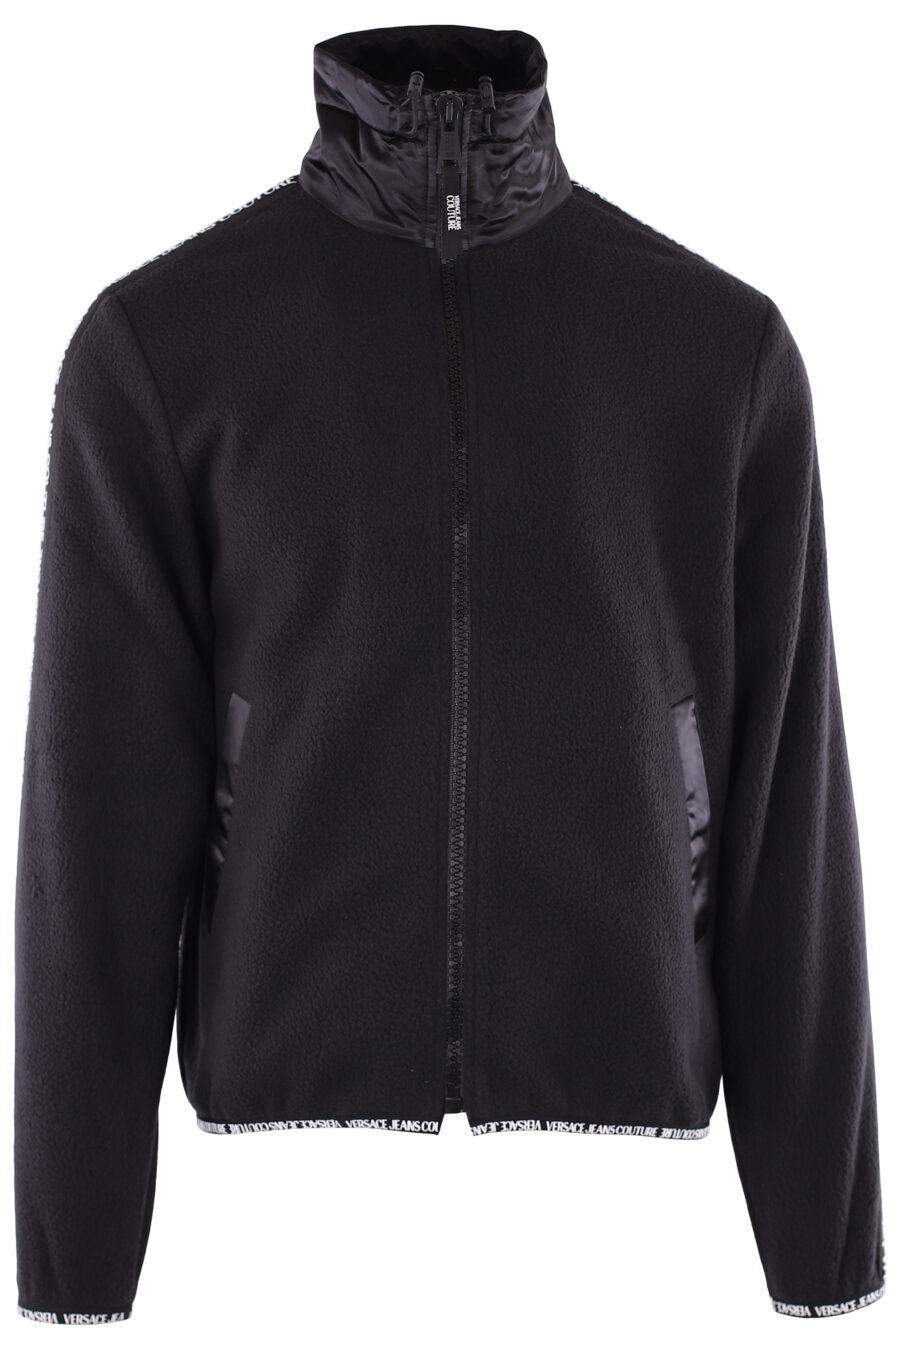 Camisola de lã preta com logótipo de fita nas mangas - IMG 6369